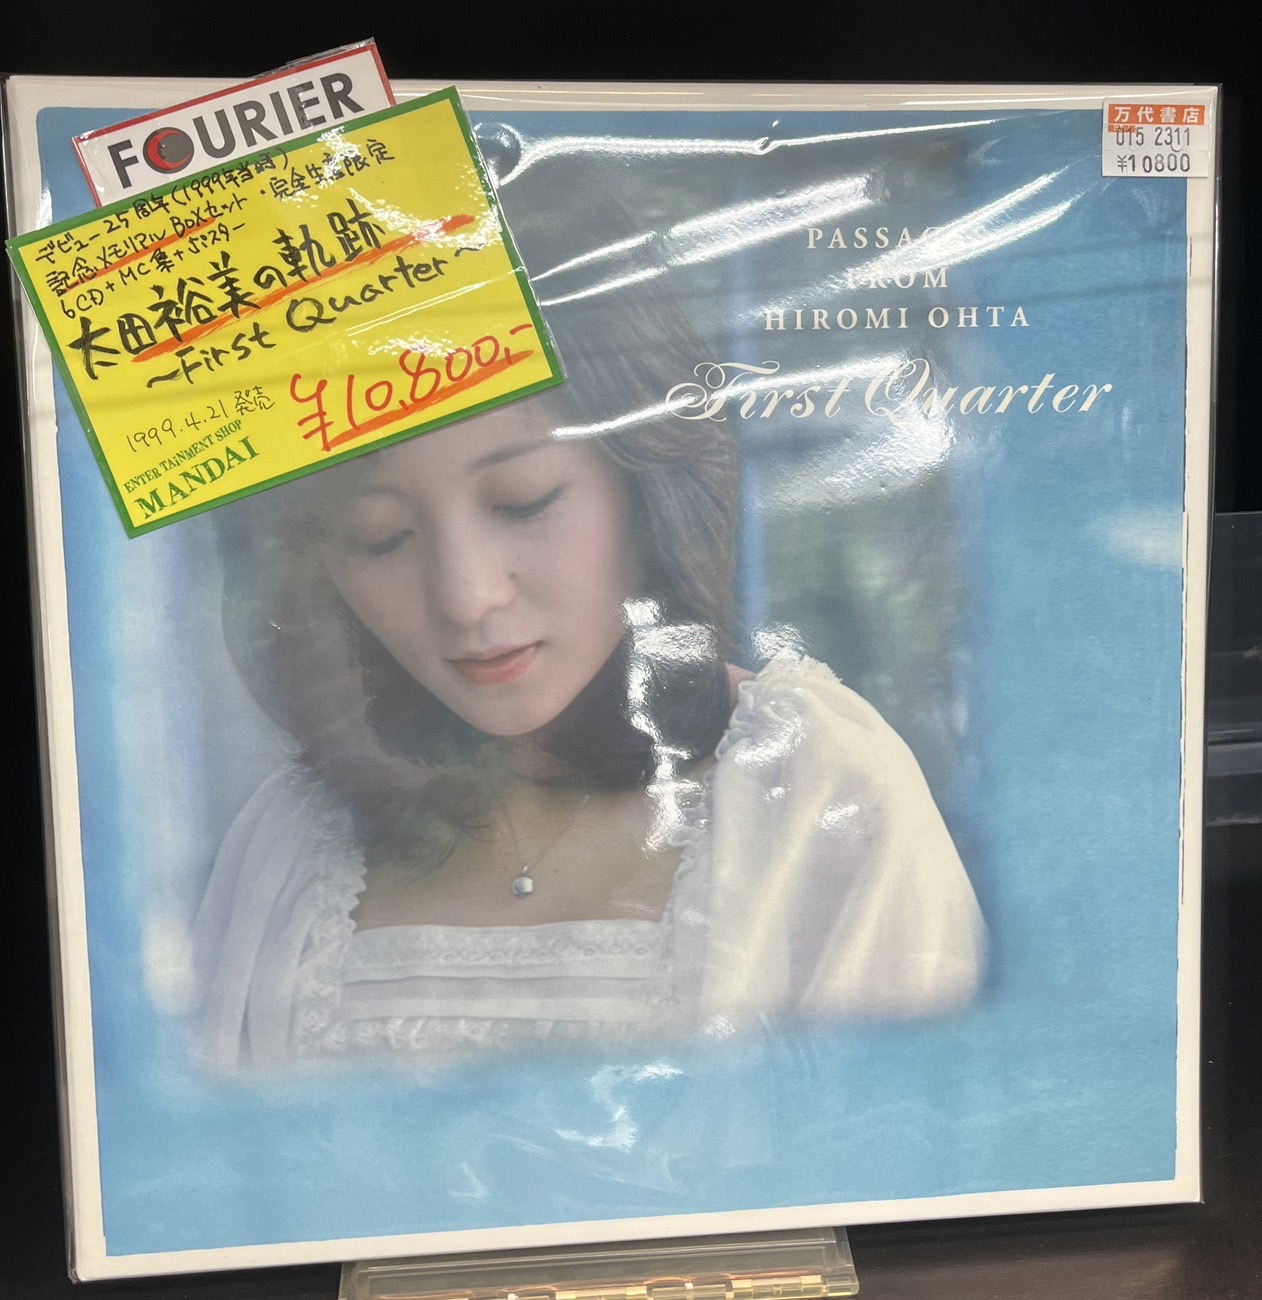 太田裕美の軌跡 〜First Quarter〜」太田裕美 CD6枚組BOX - CD